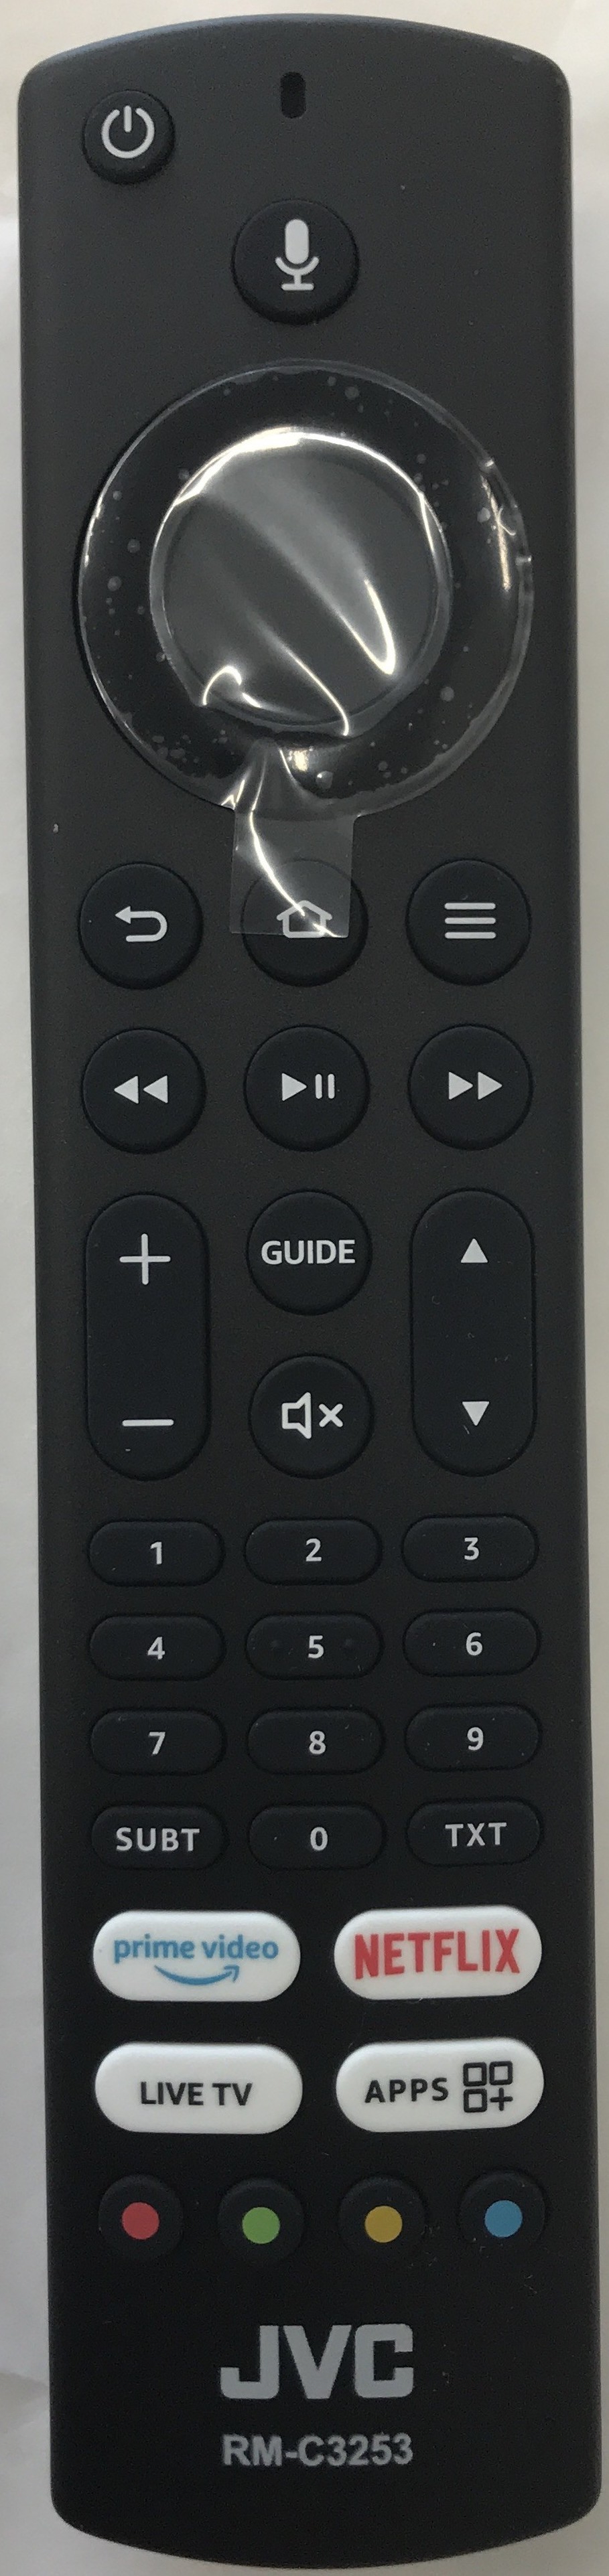 JVC 10123635 Smart Remote Control Original